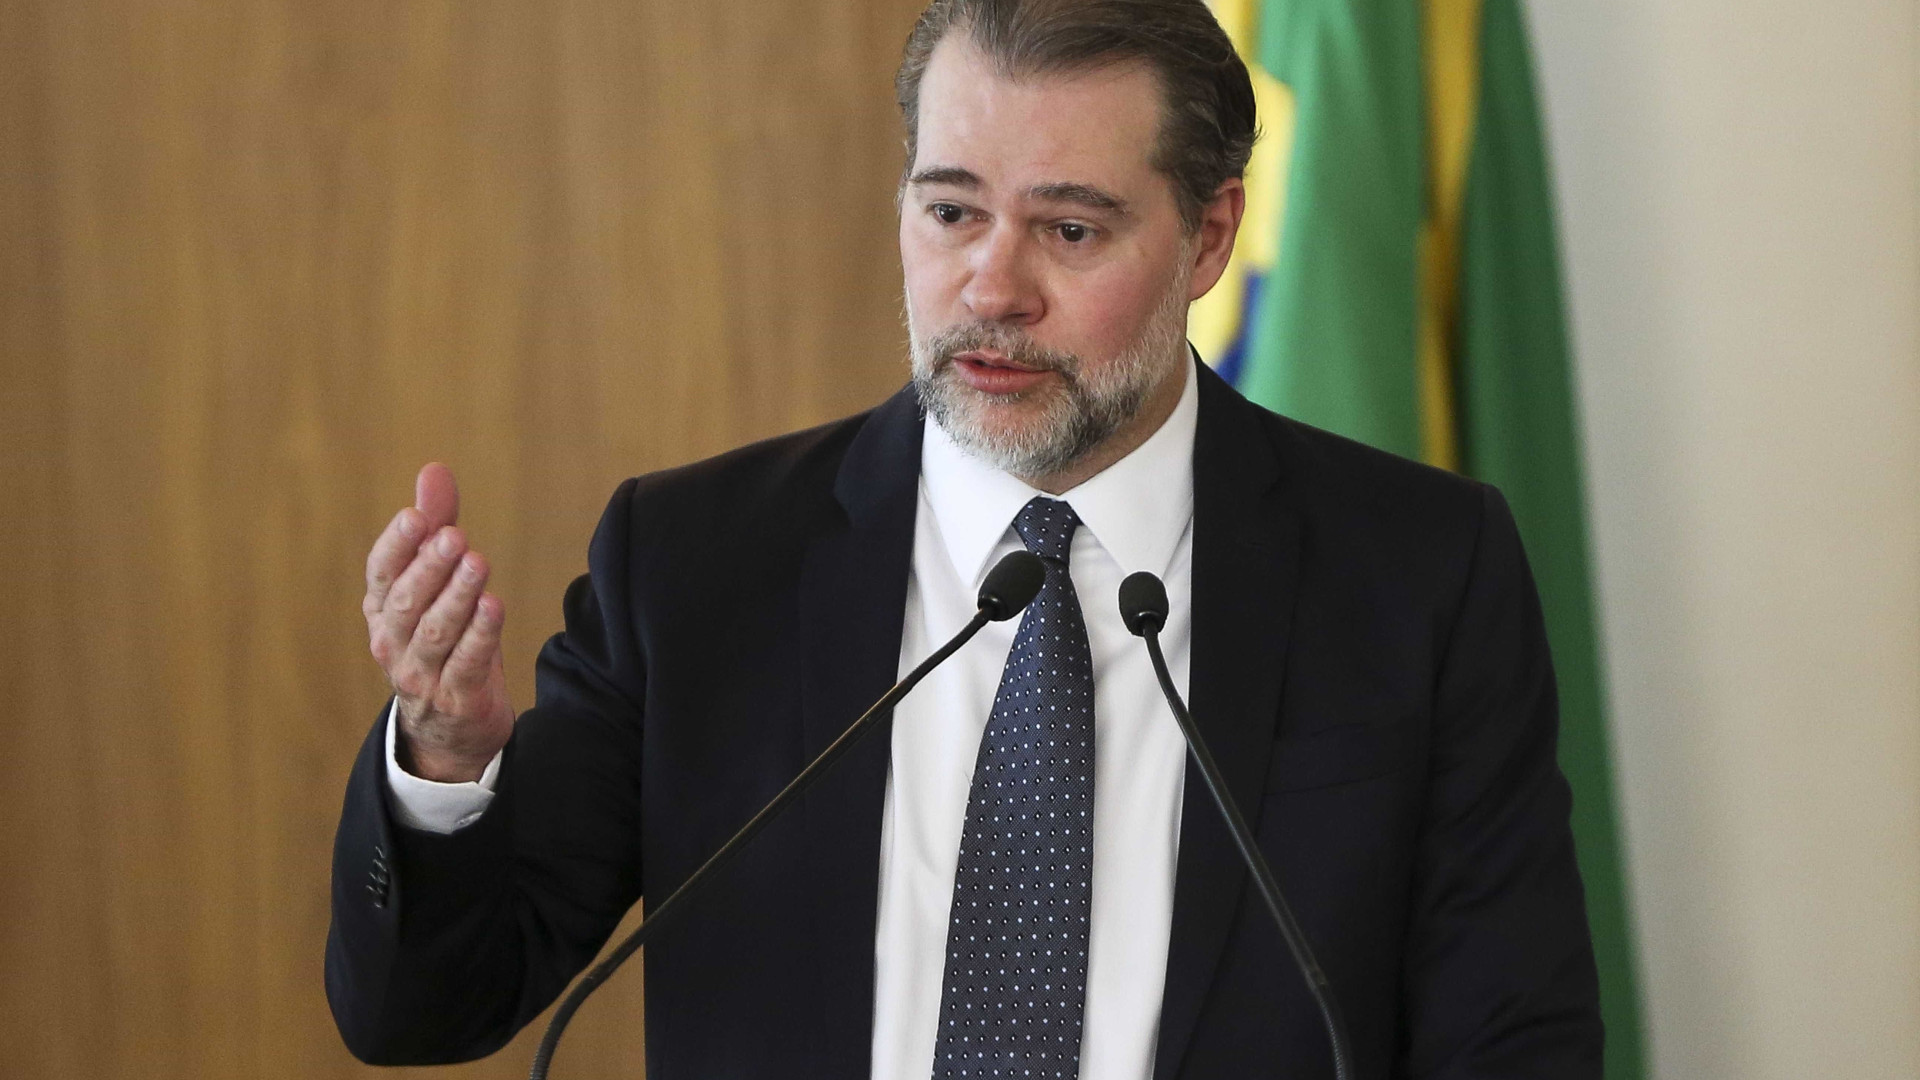 Presidente do STF derruba decisão que poderia soltar Lula